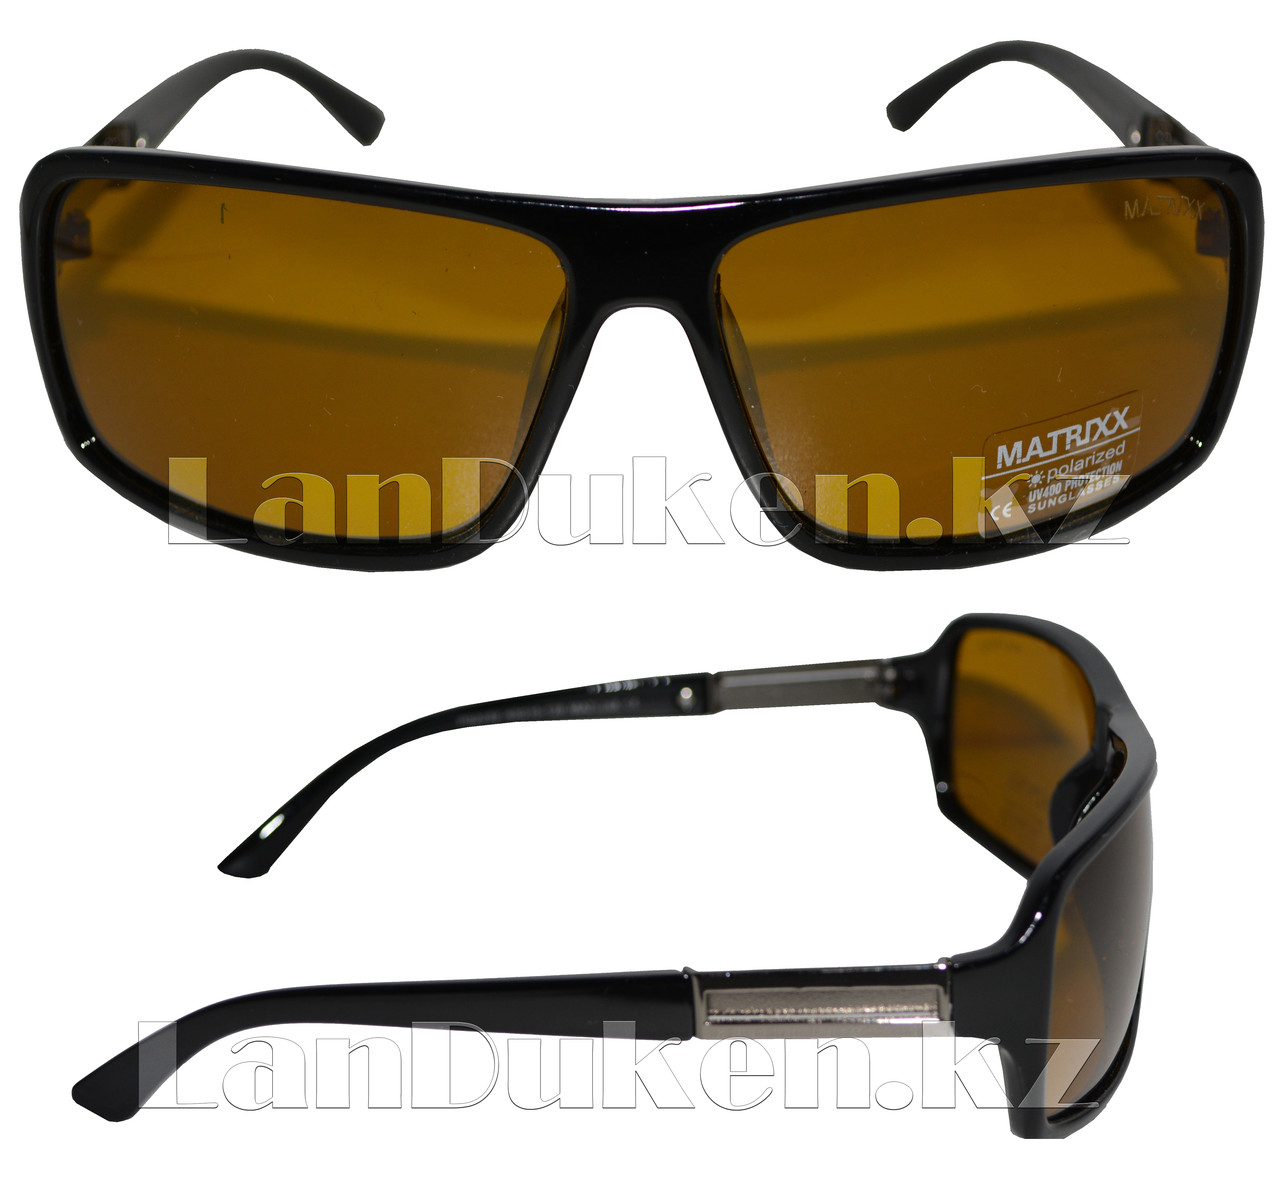 Антибликовые очки с черной, глянцевой оправой Matrixx Polaroid, фото 1